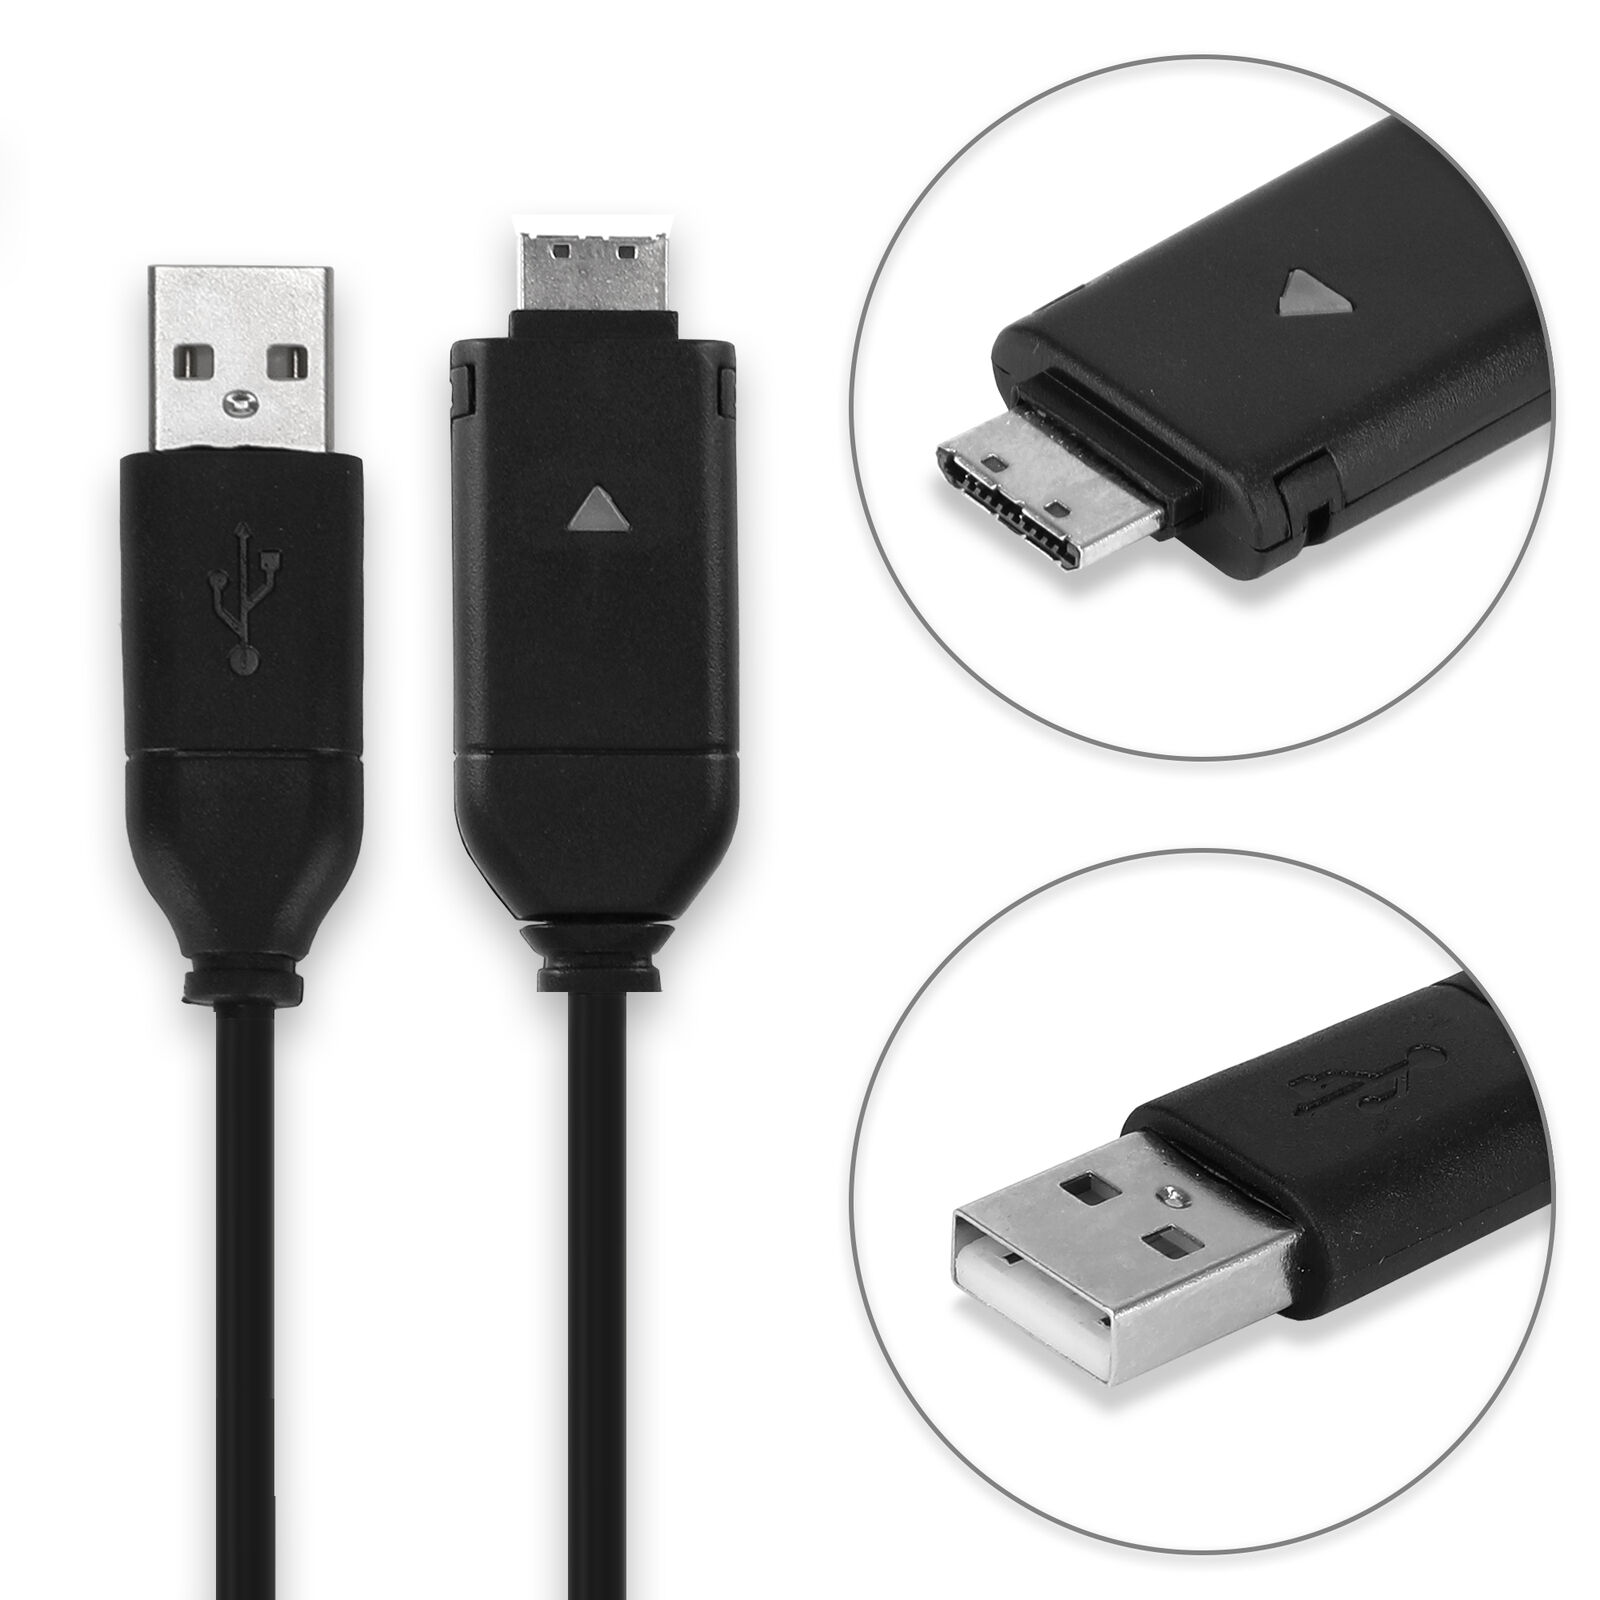 Cable USB Samsung PL57 SL50 WB550 NV33 L200 PL50 WB660 PL21 Cable...